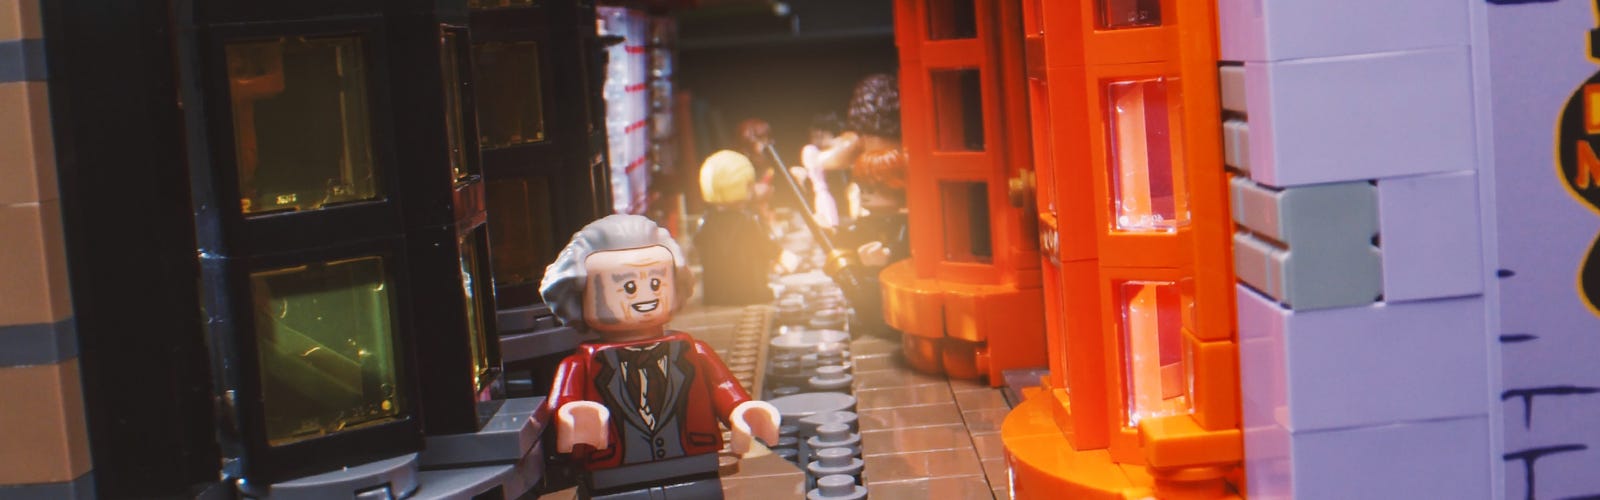 LEGO s'offre Le Chemin de Traverse !! - La Plume de Poudlard - Le média  d'actualité Harry Potter